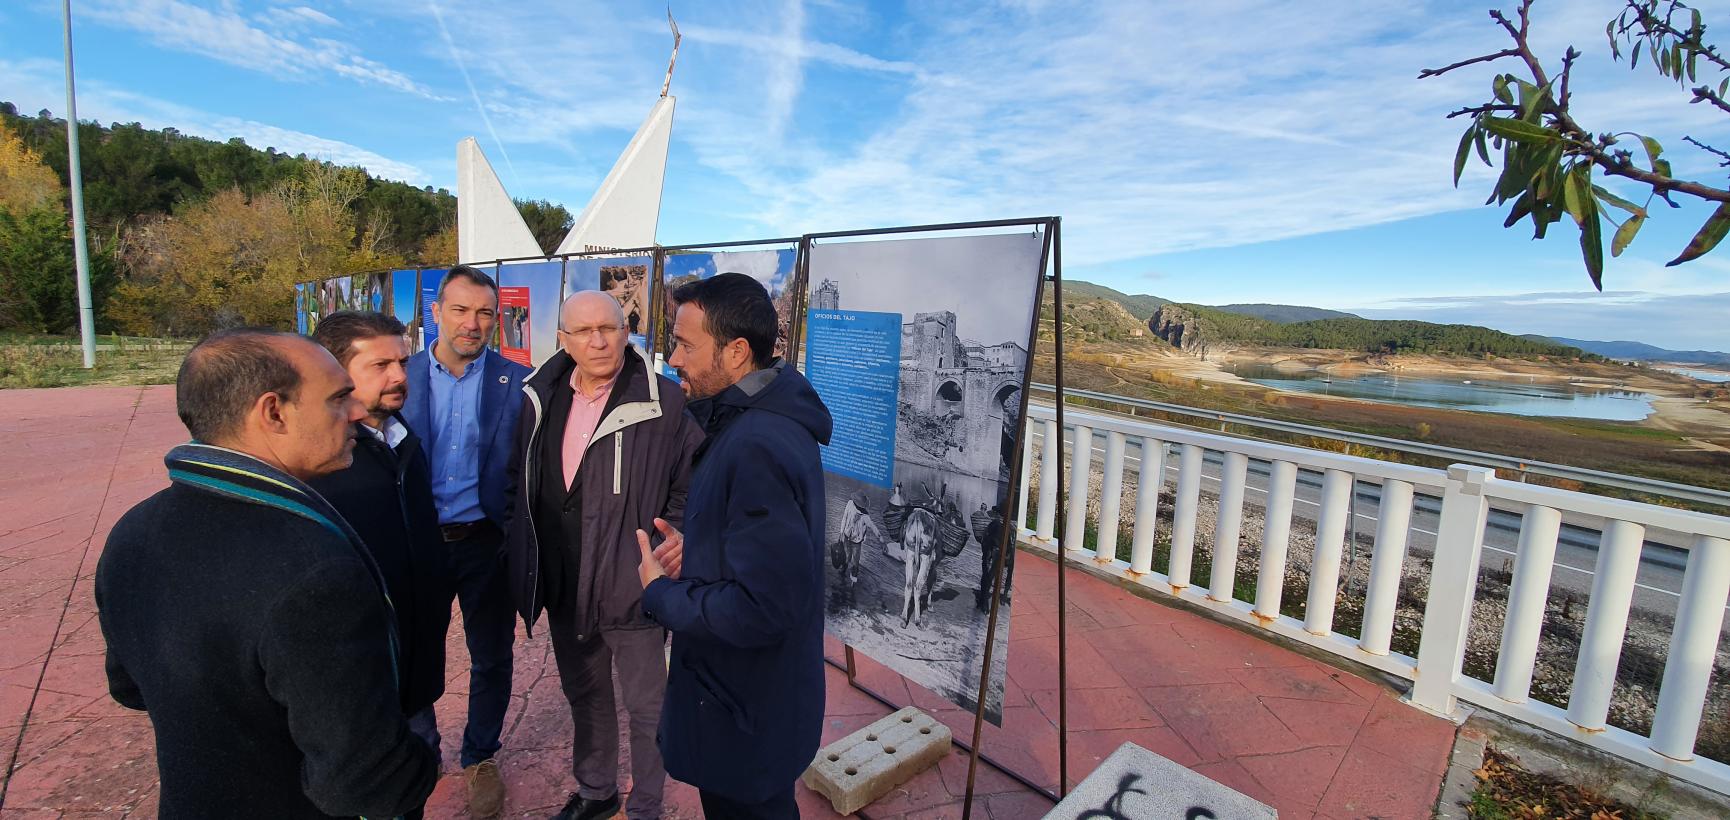 El Gobierno de Castilla-La Mancha celebra la aprobación del Plan hidrológico del Tajo, “un logro histórico” porque fija caudales ecológicos que garantizan la sostenibilidad del río